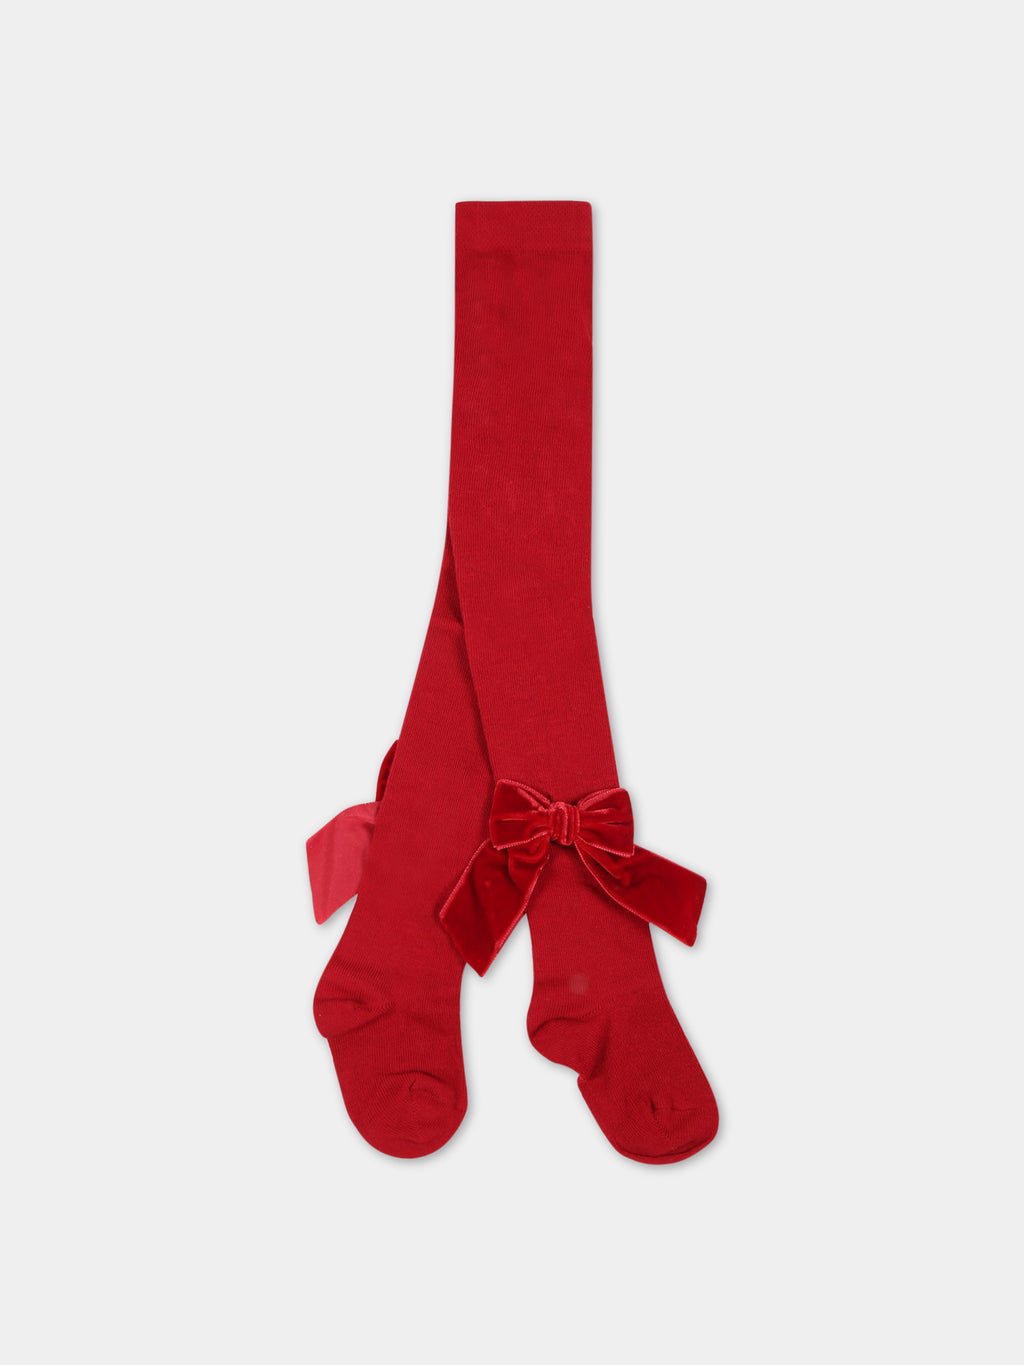 Collants rouges pour fille avec nœuds